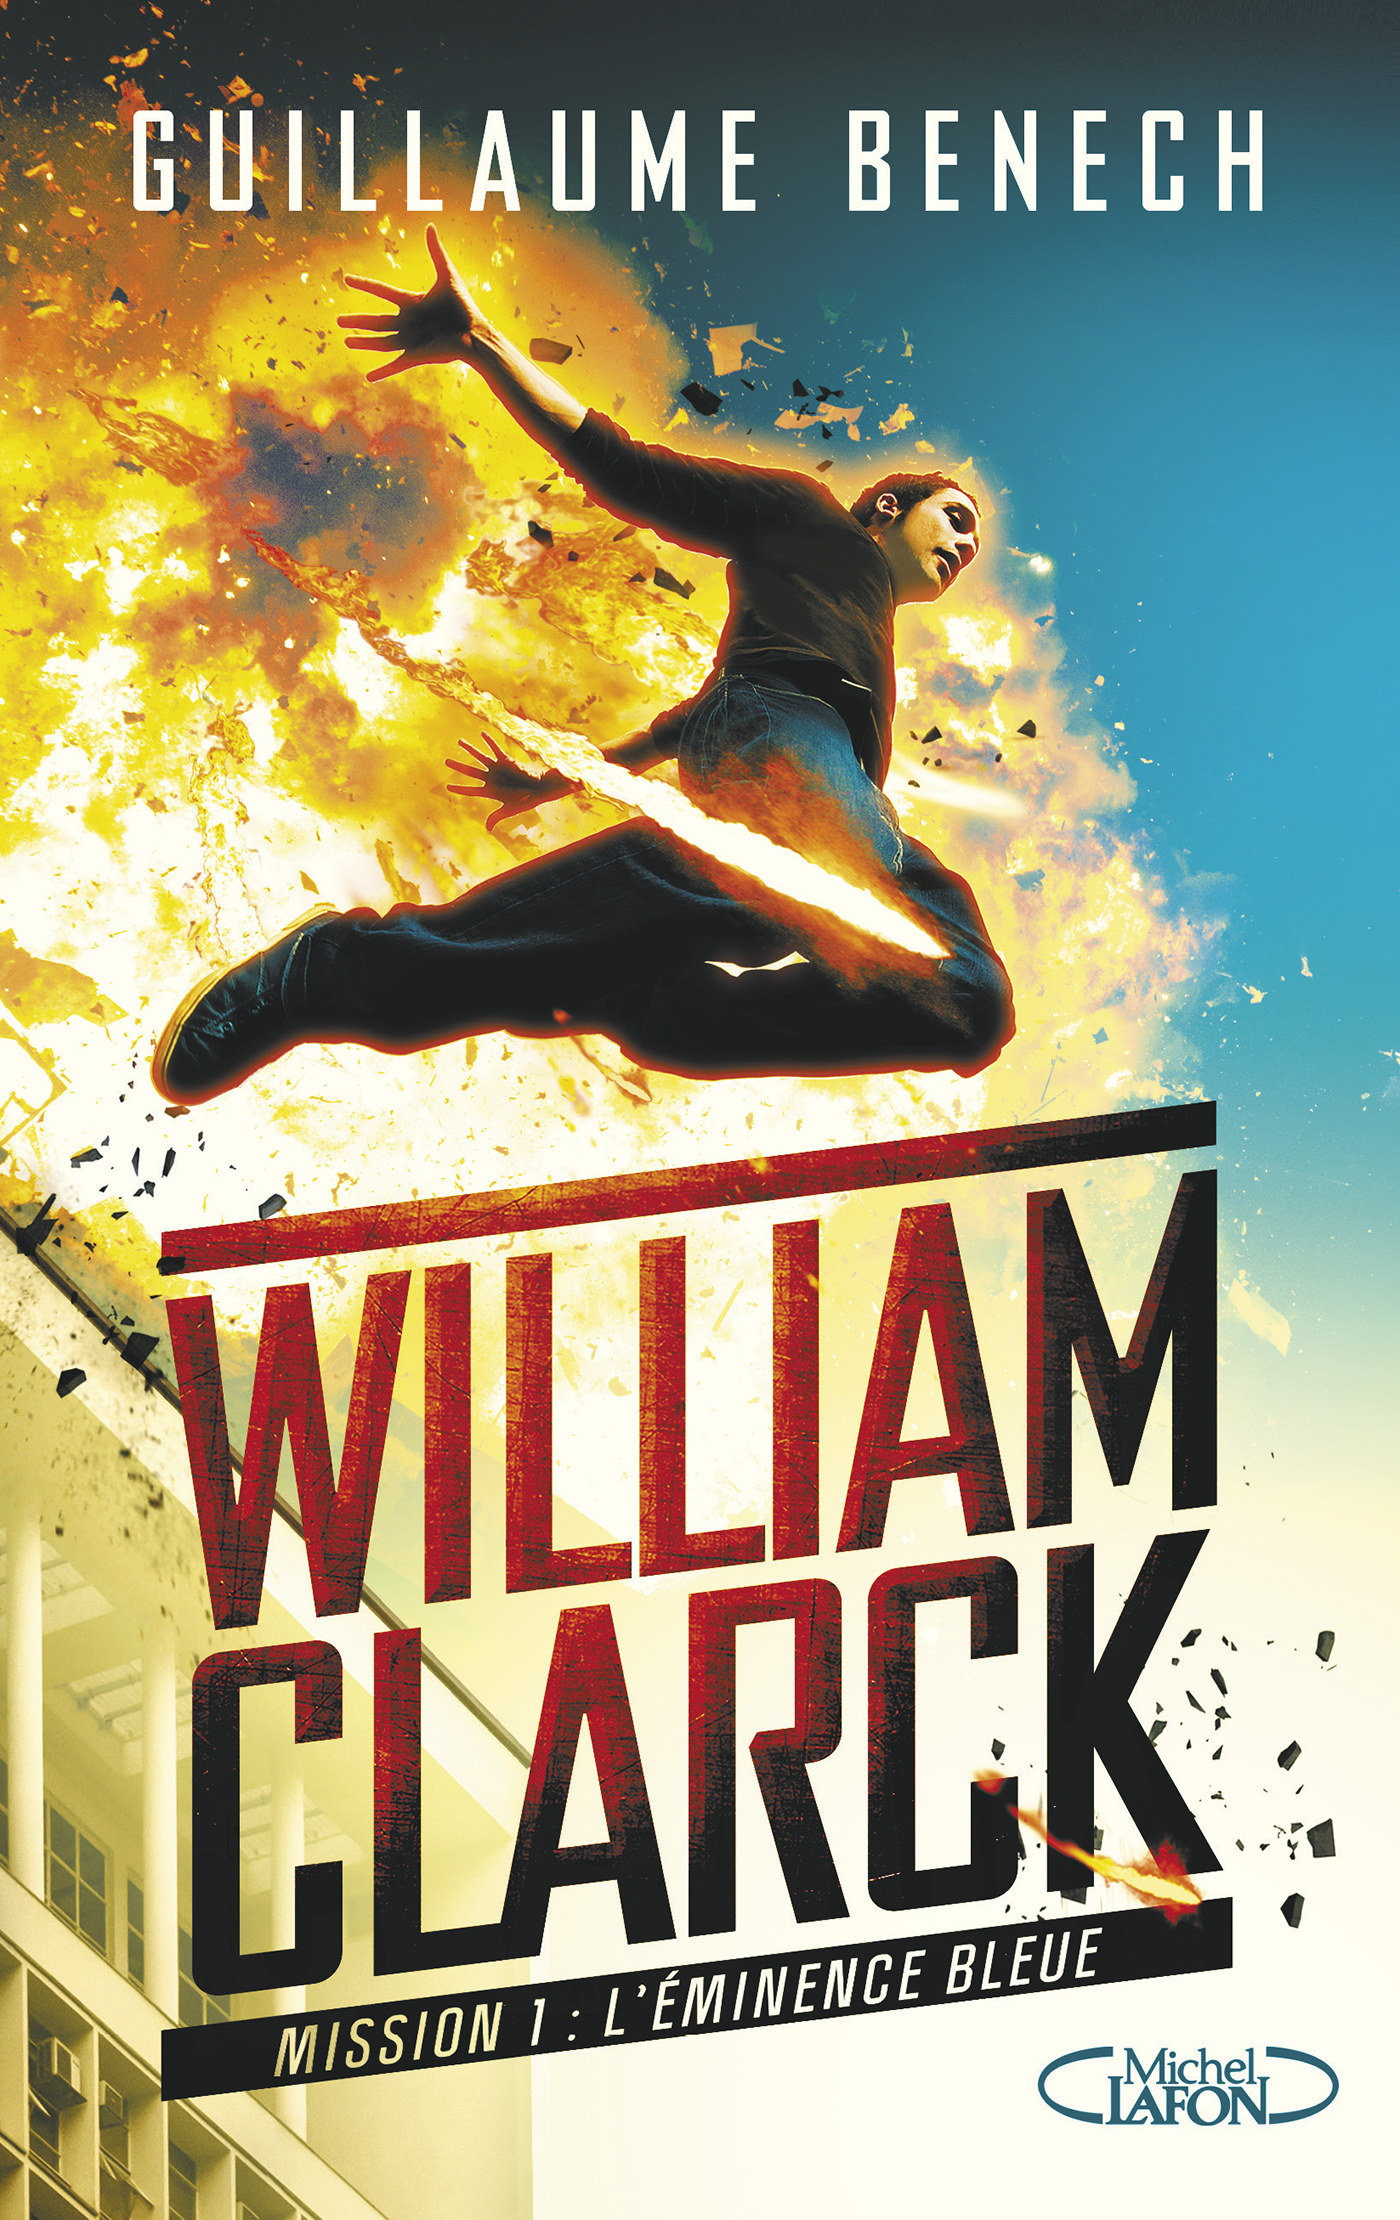 William Clarck